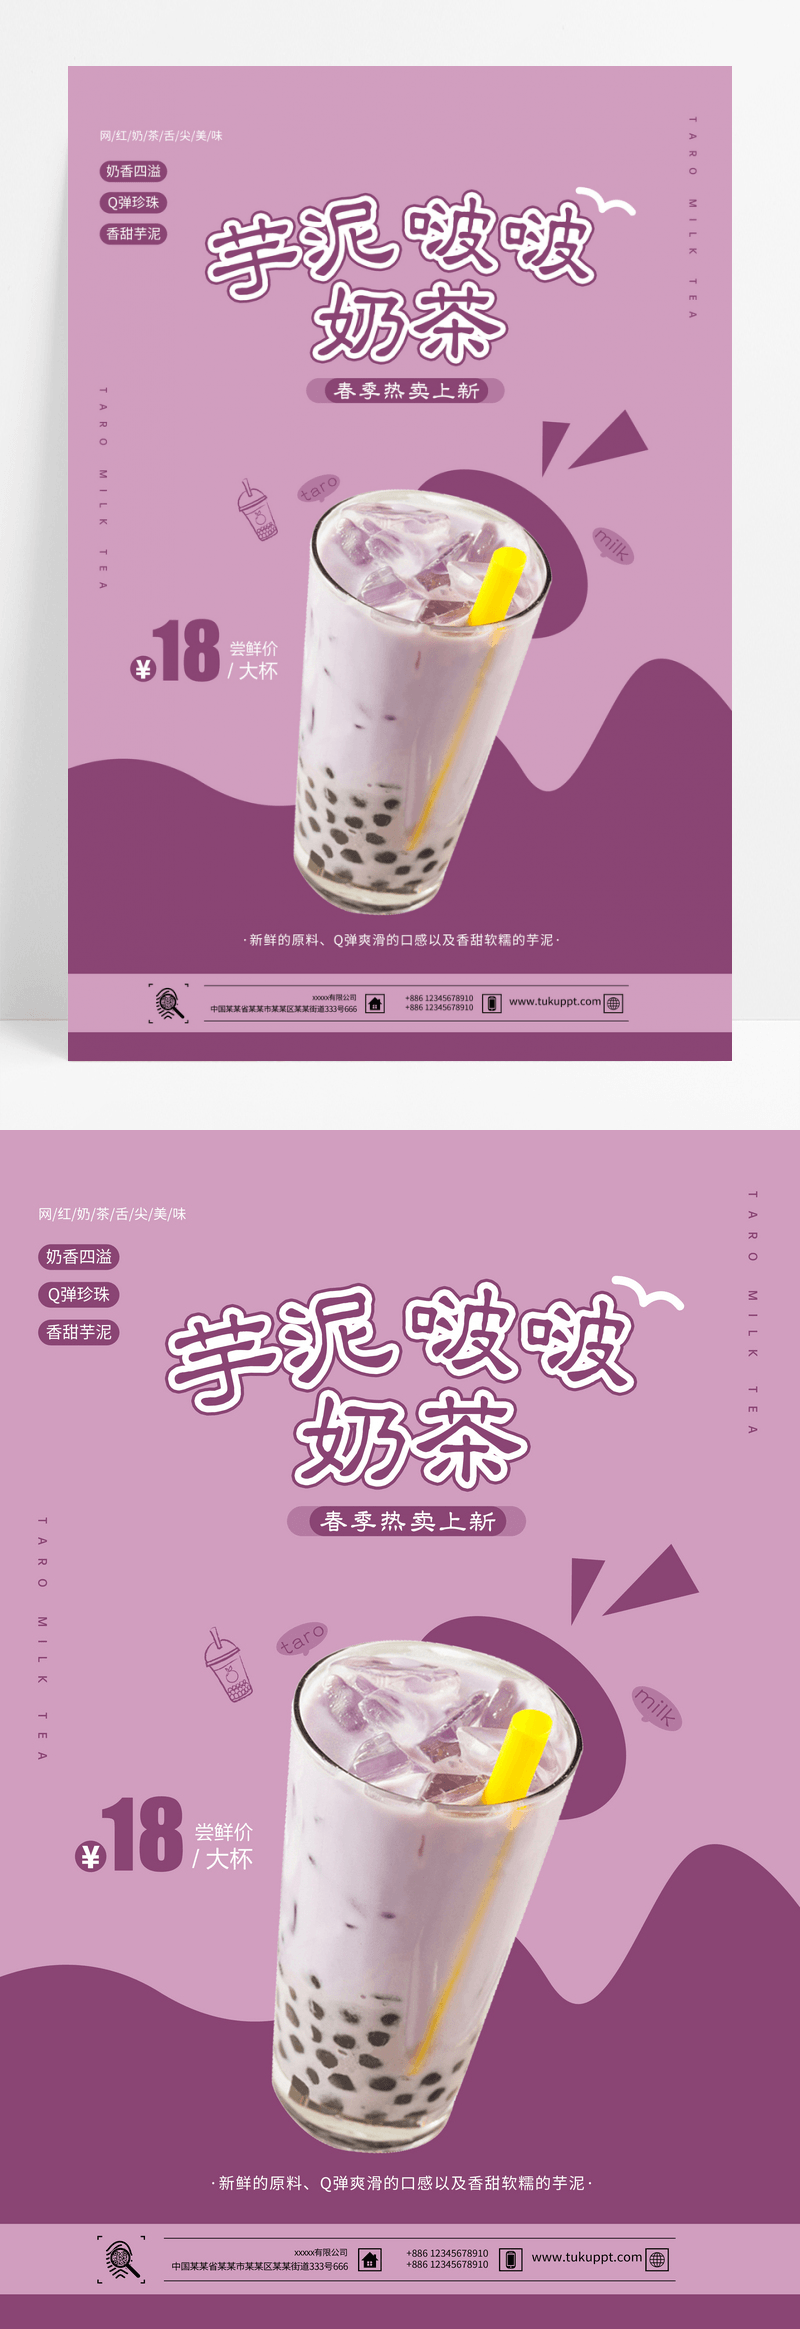 网红芋泥波波奶茶宣传海报